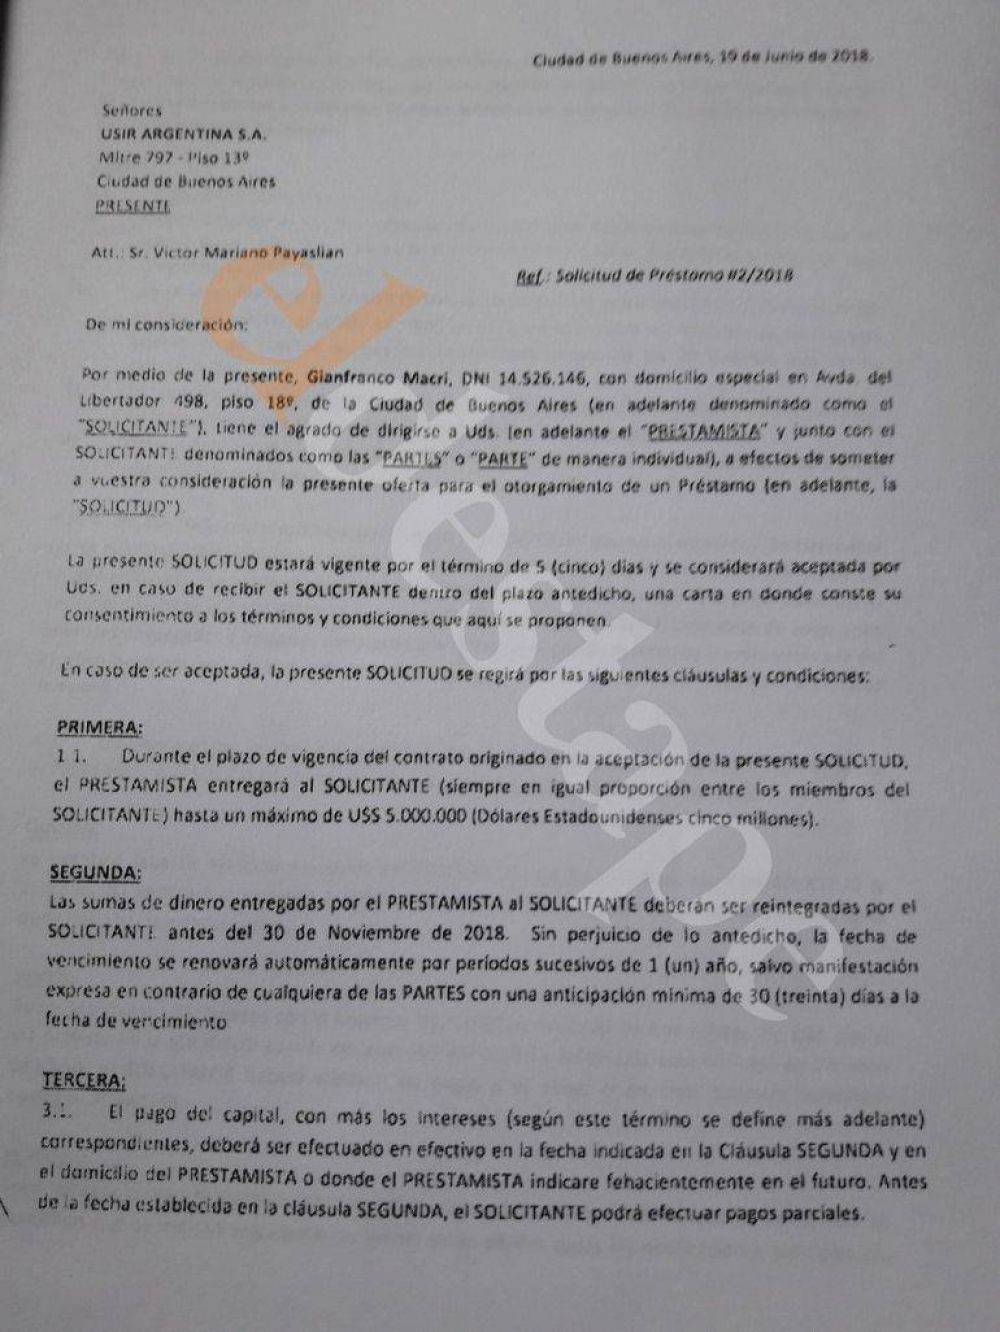 El hermano de Macri recibi 5 millones de dlares de la sospechosa firma que haba ganado 6 parques elicos sin licitar